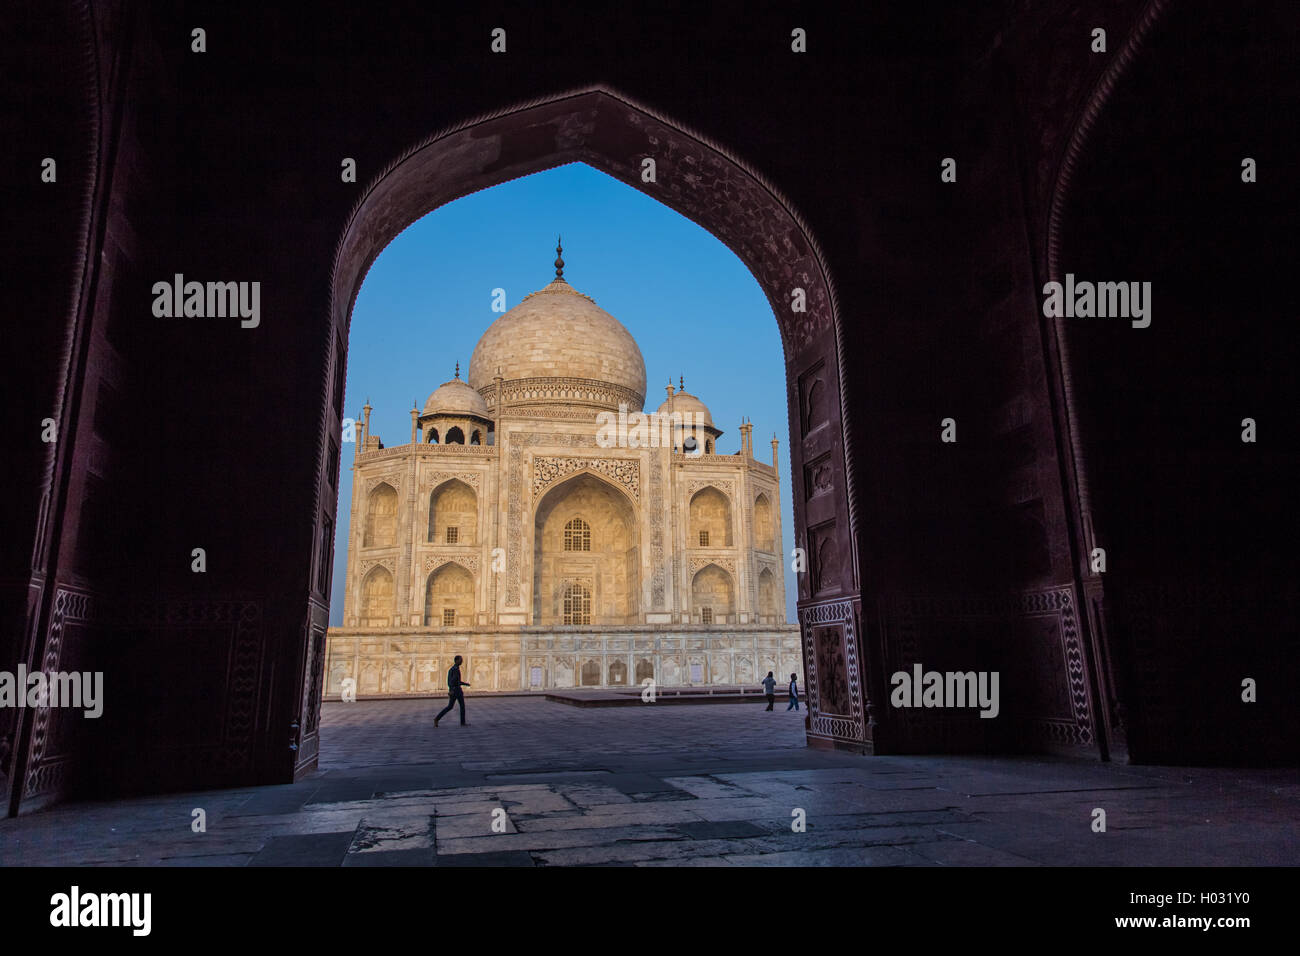 AGRA, India - 28 febbraio 2015: vista del Taj Mahal dall'interno Mihman Khana con persone di passaggio. Il lato est del Taj. Foto Stock